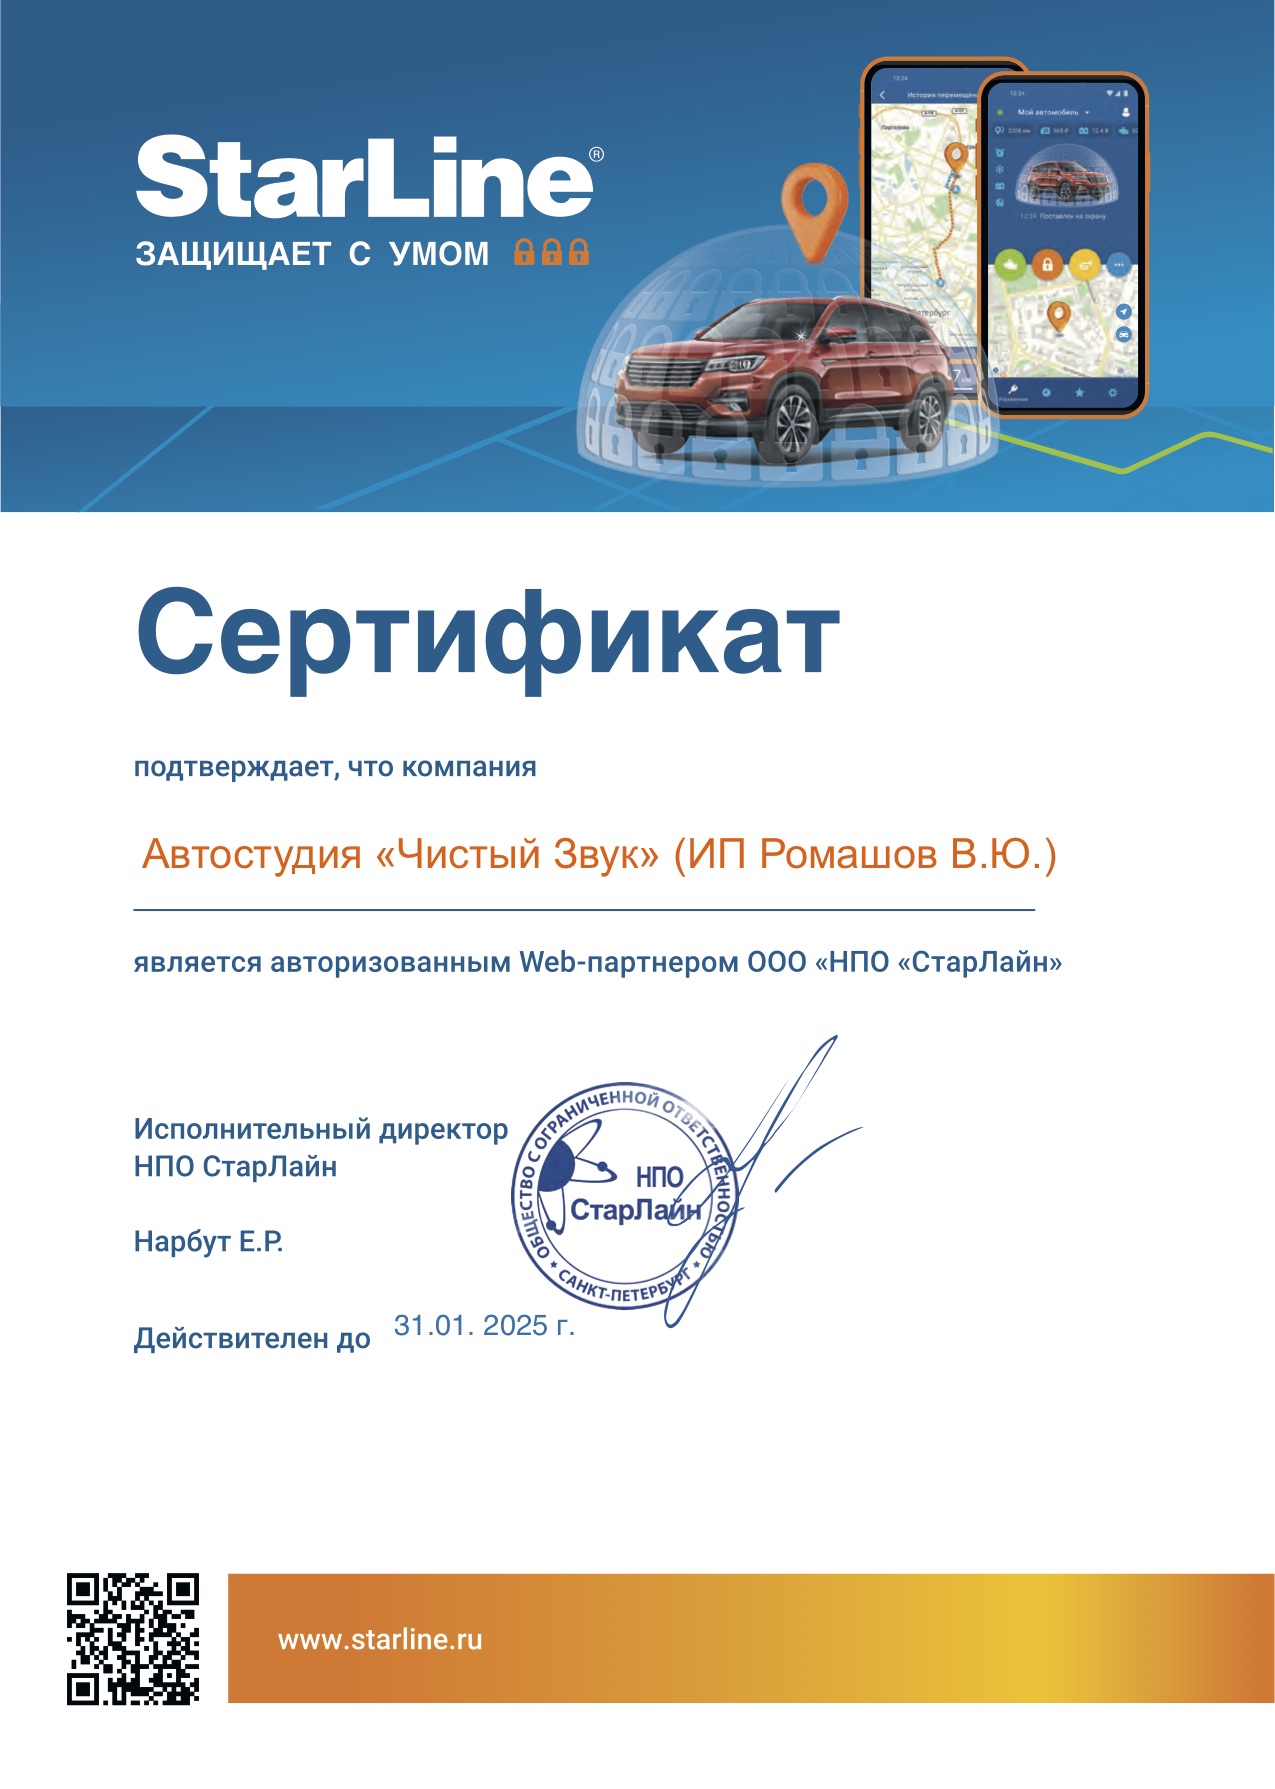 Сертификат StarLine